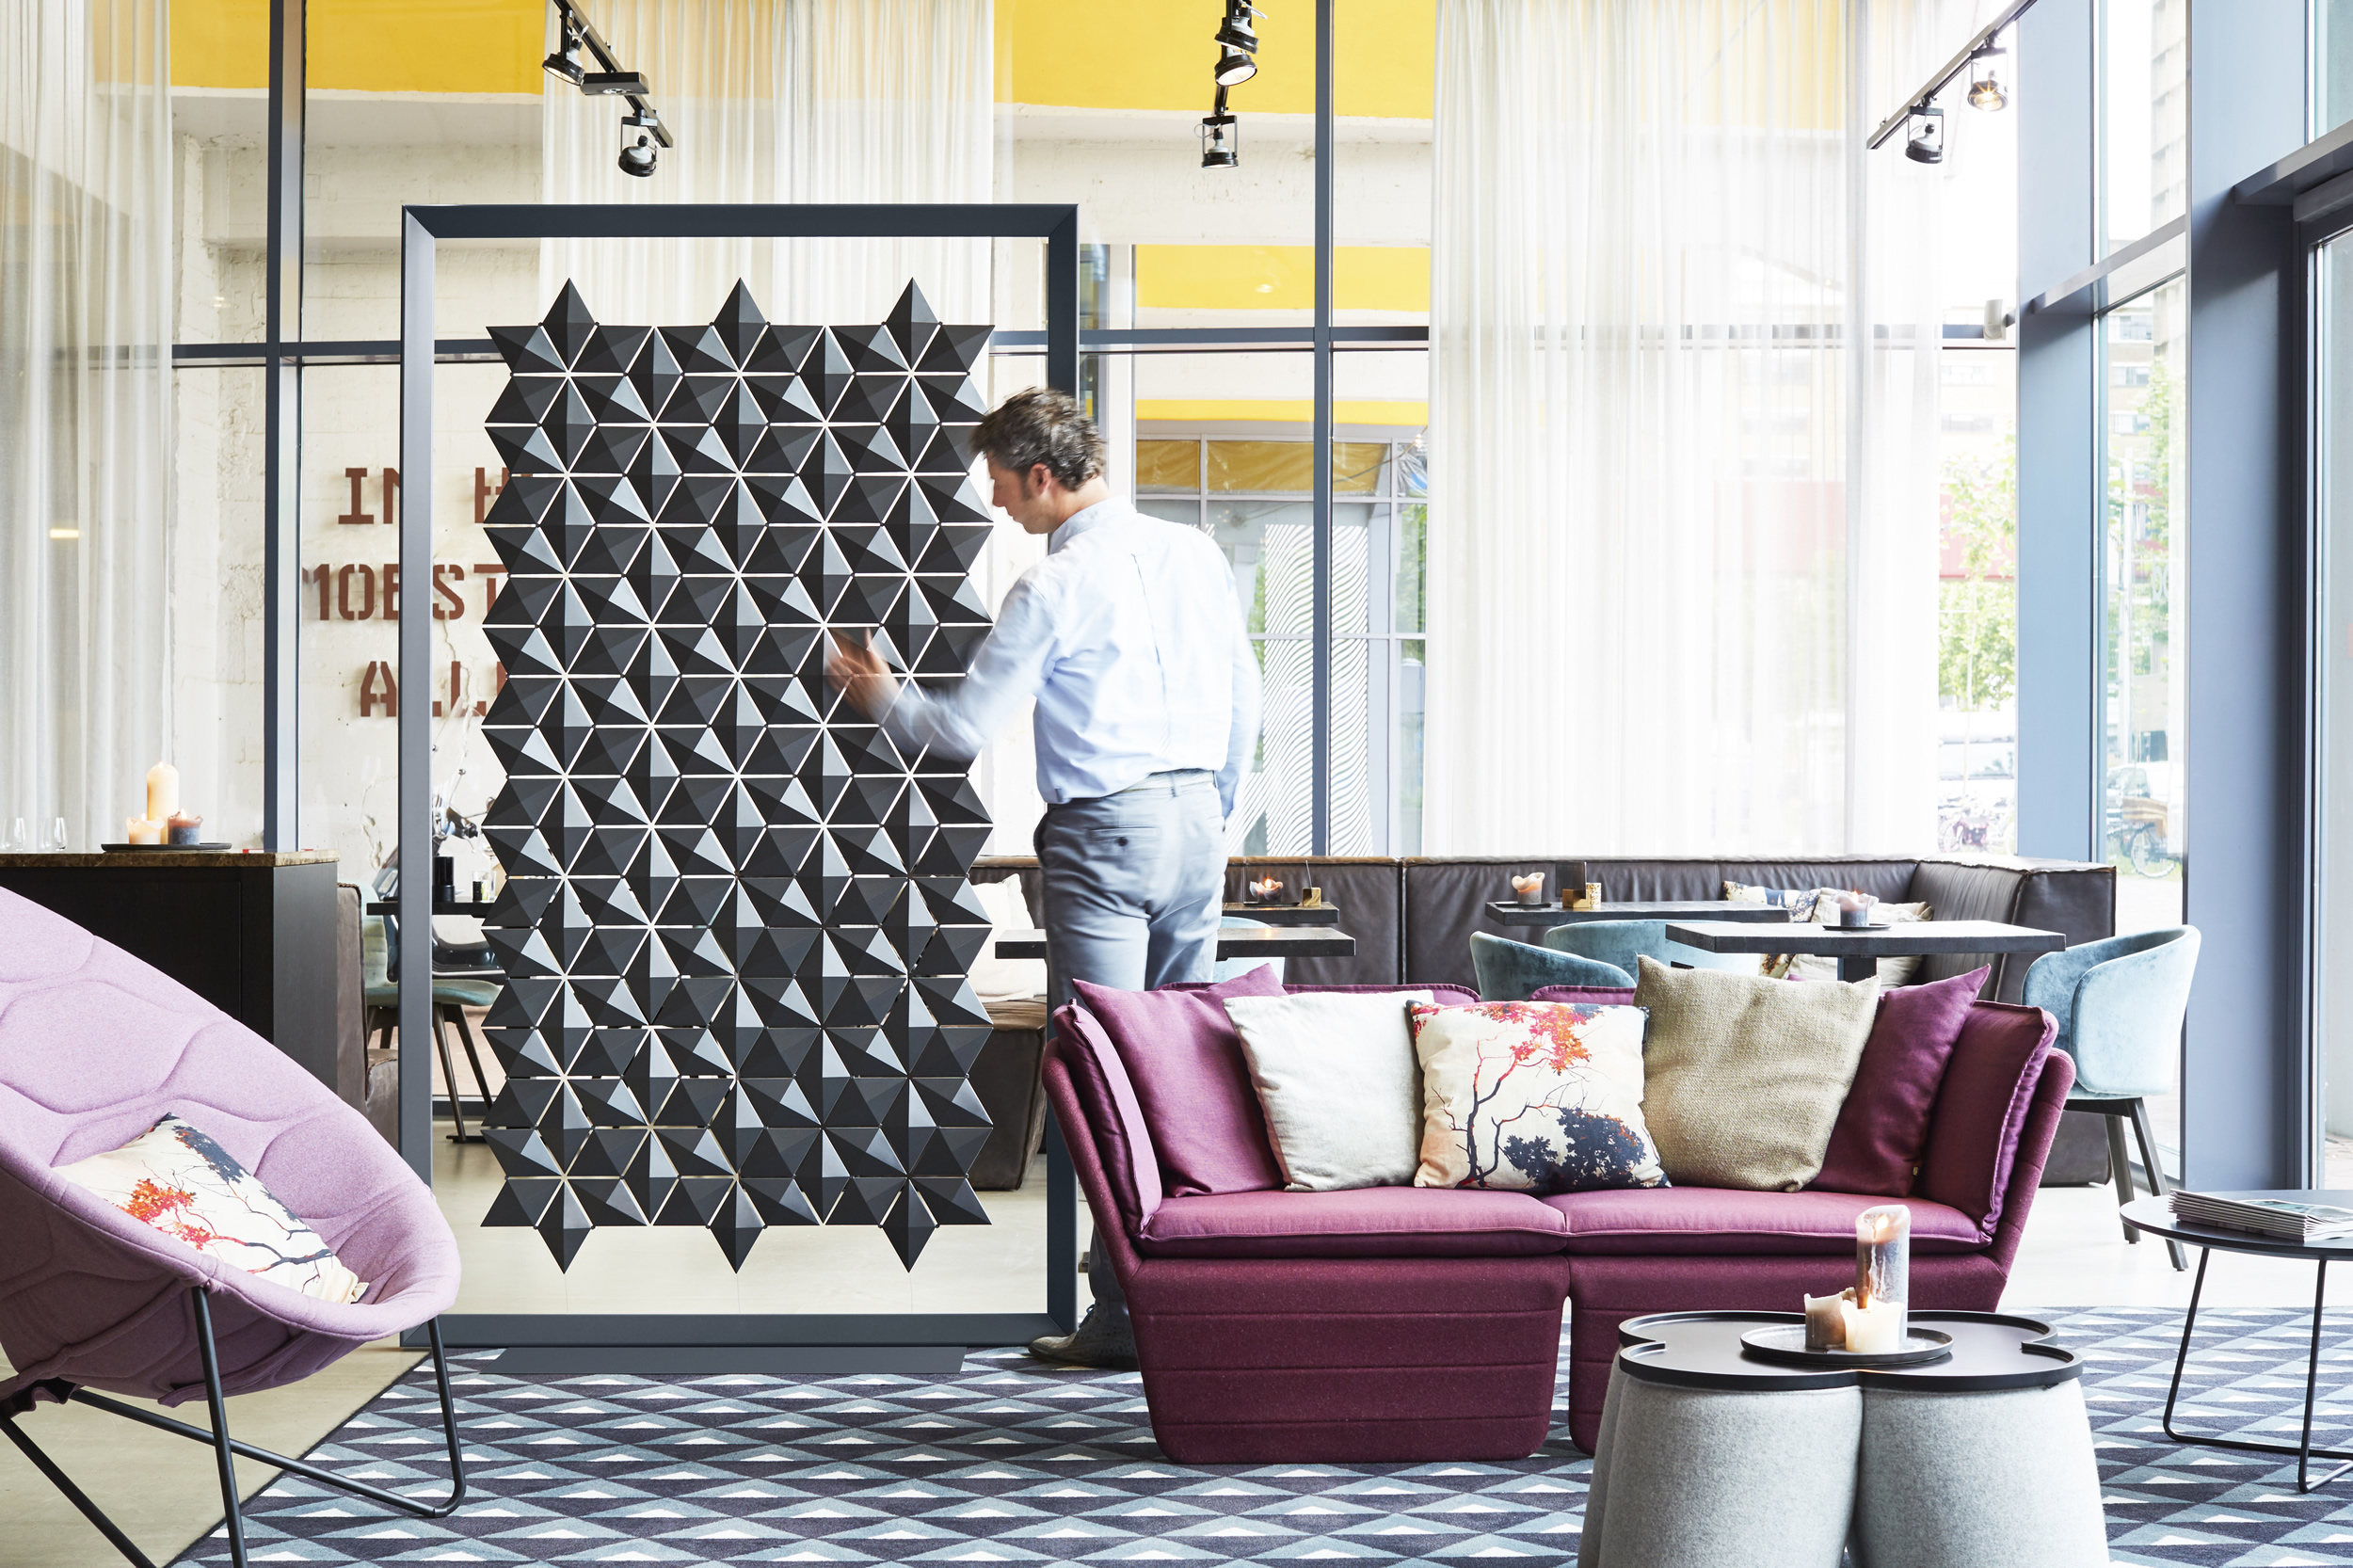 Freestanding Room Divider Facet by Bas van Leeuwen & Mireille Meijs for Bloomming